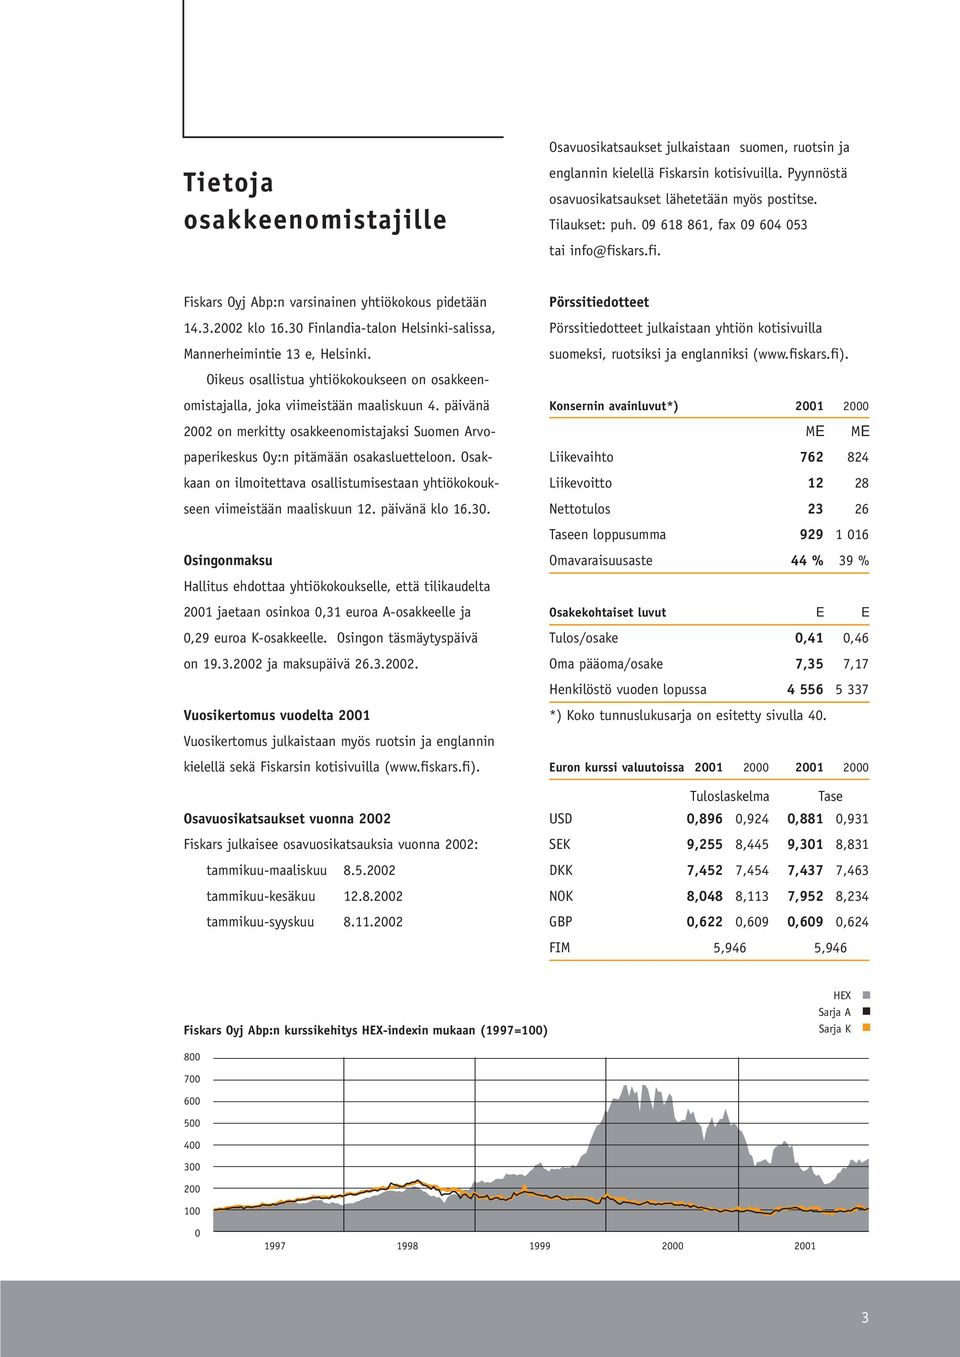 Oikeus osallistua yhtiökokoukseen on osakkeenomistajalla, joka viimeistään maaliskuun 4. päivänä 2002 on merkitty osakkeenomistajaksi Suomen Arvopaperikeskus Oy:n pitämään osakasluetteloon.